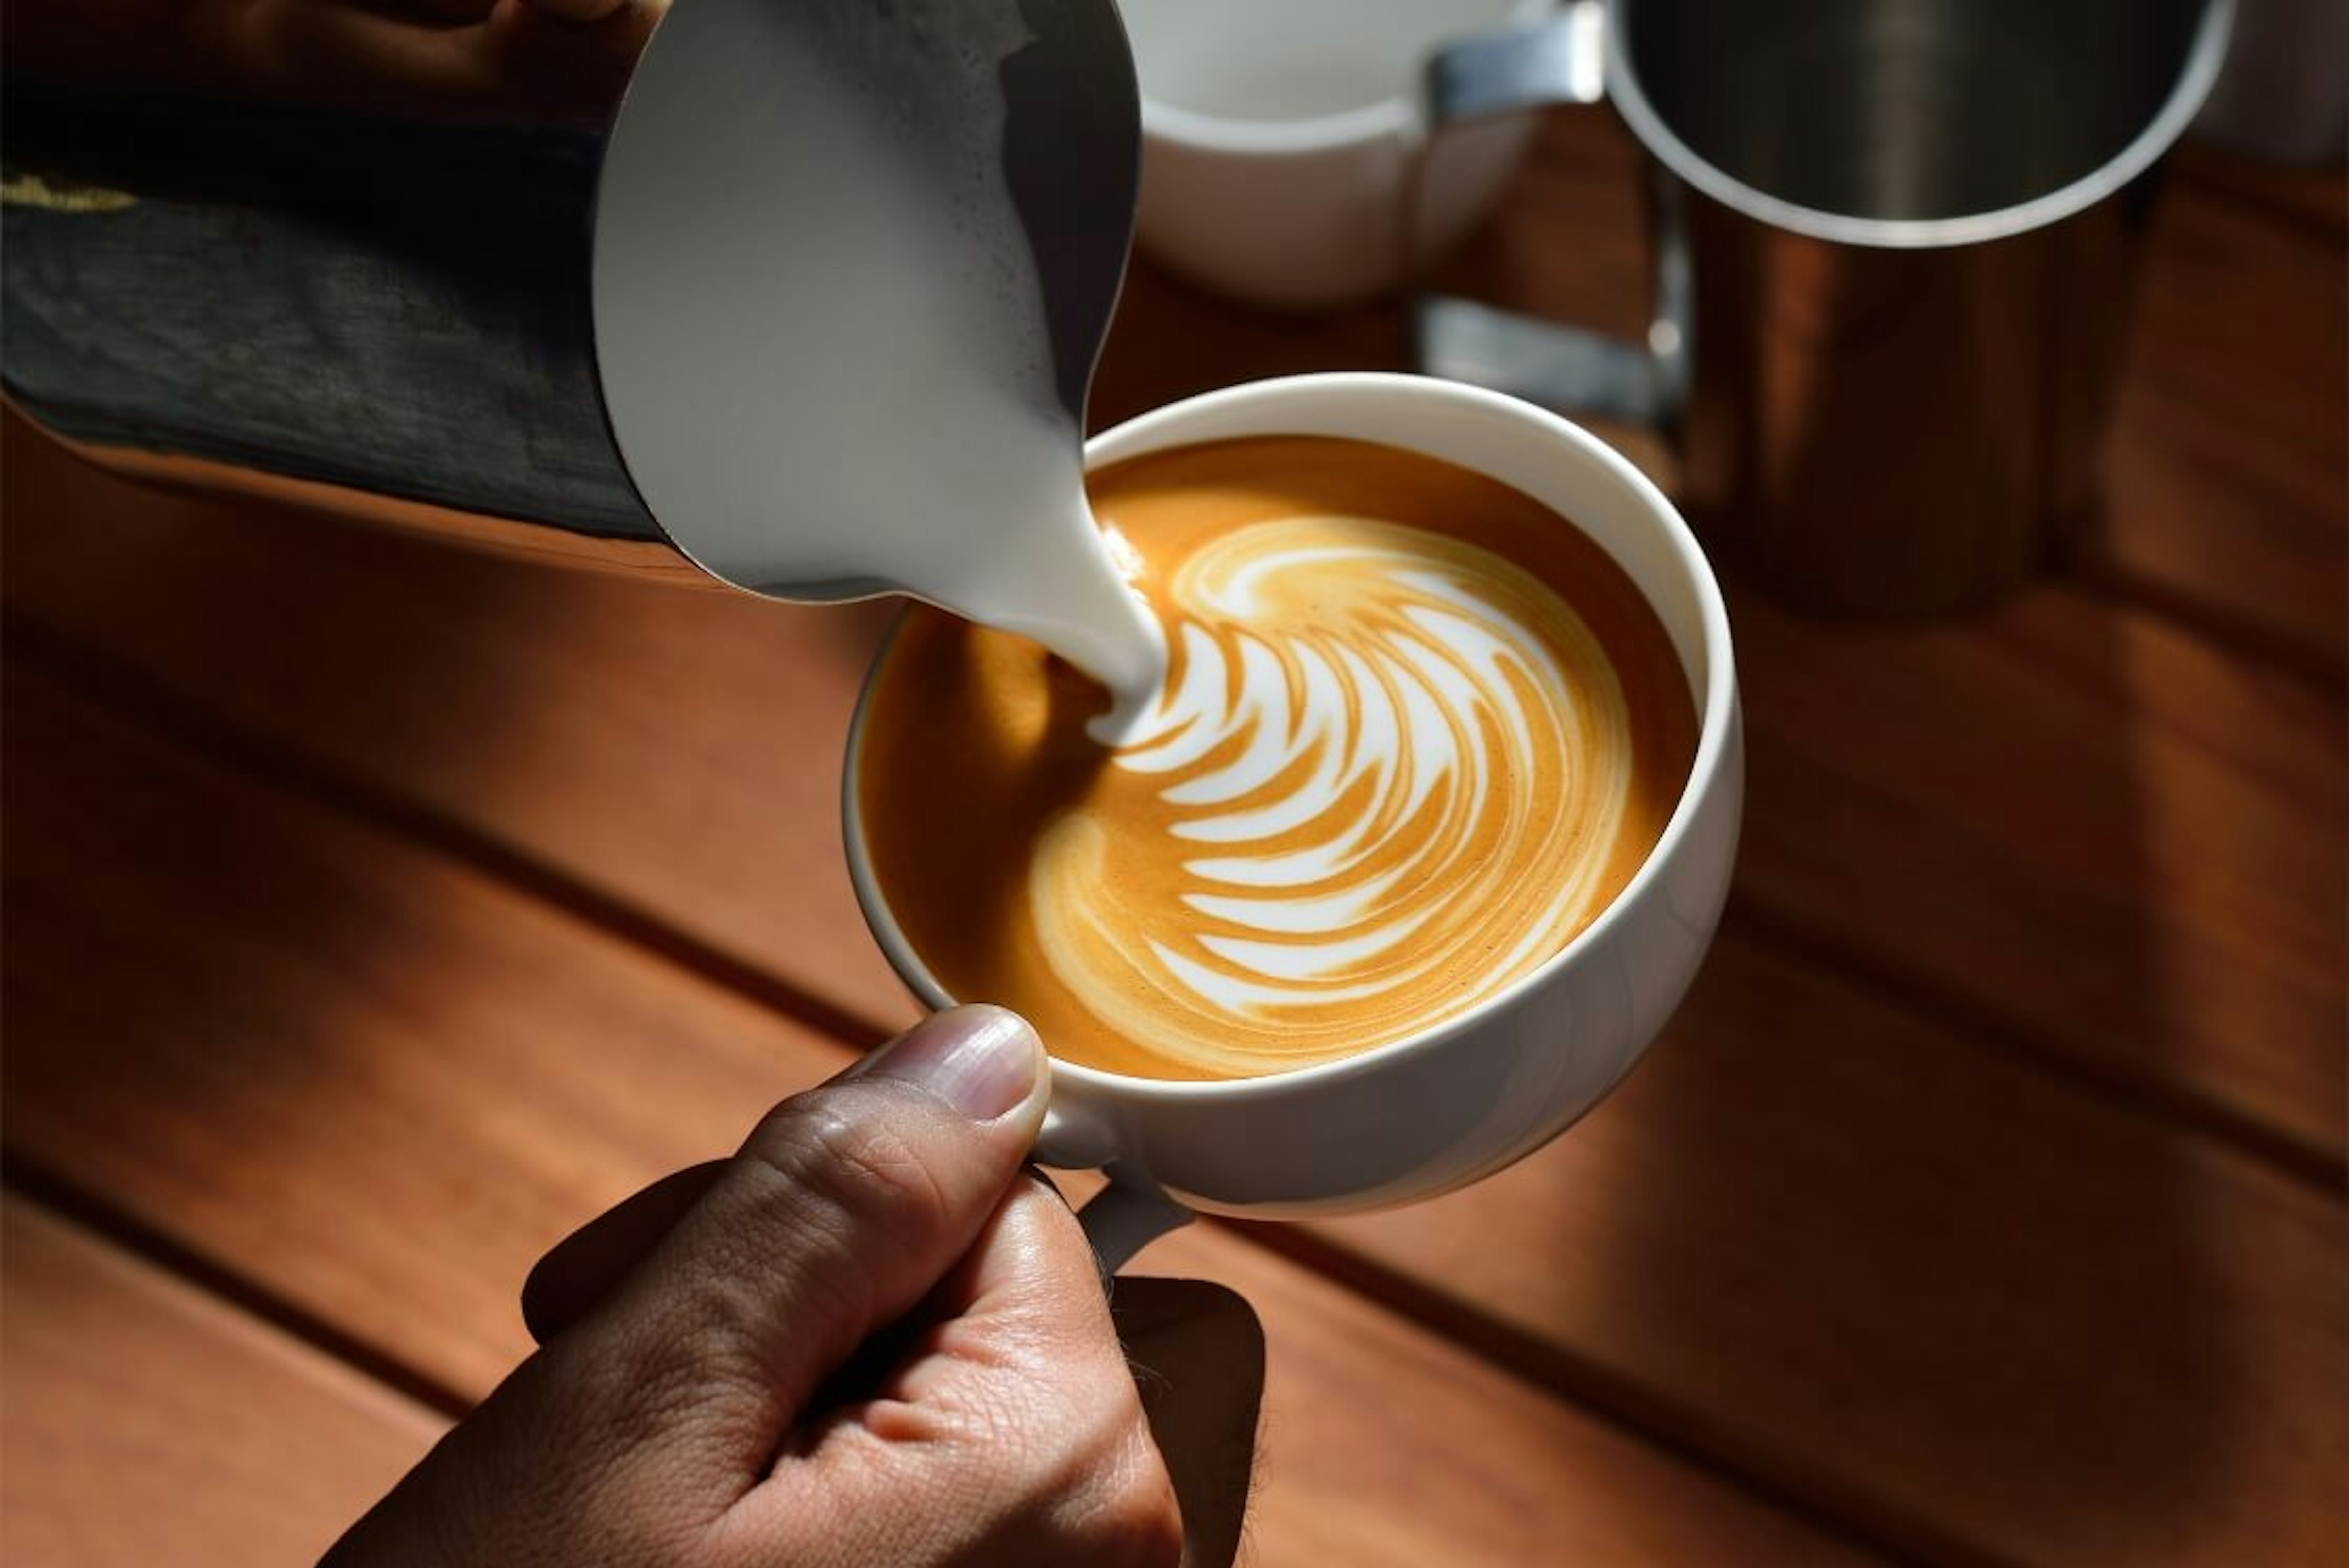 Una persona aprende a cremar y espumar la leche para hacer arte latte como un profesional mientras aprendes a abrir una cafetería desde cero.